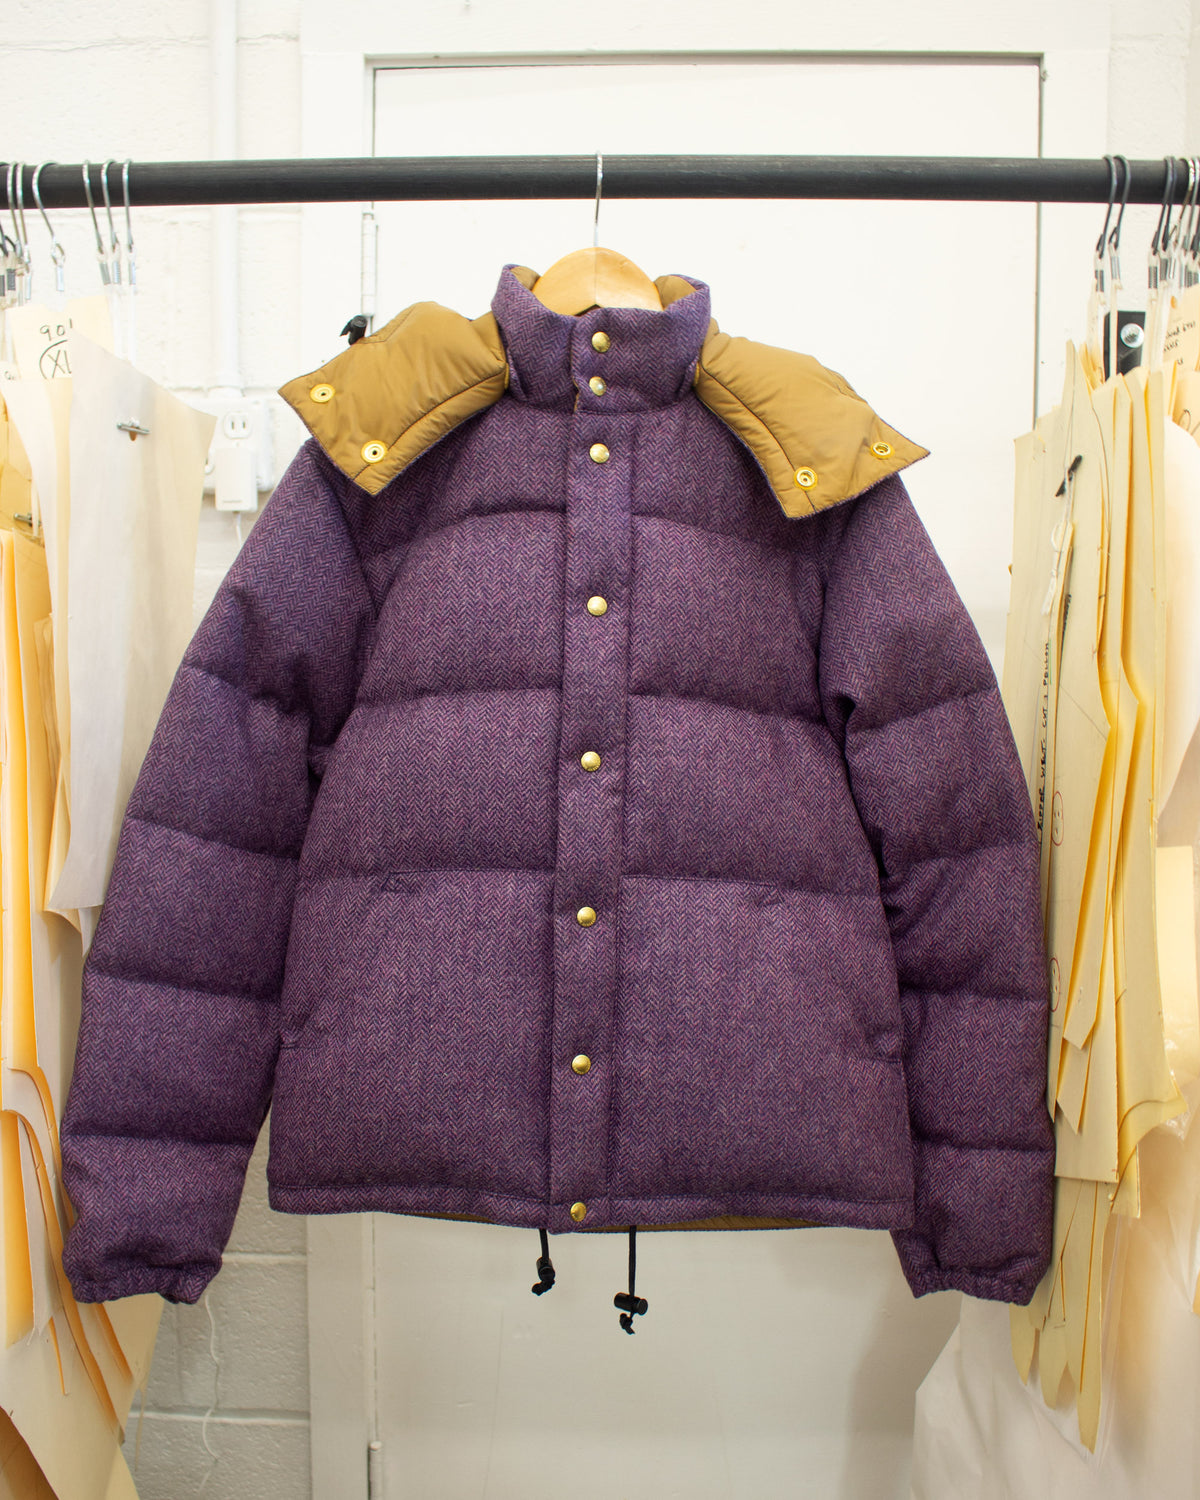 Sample Series | Down Sweater | Purple Herringbone Wool